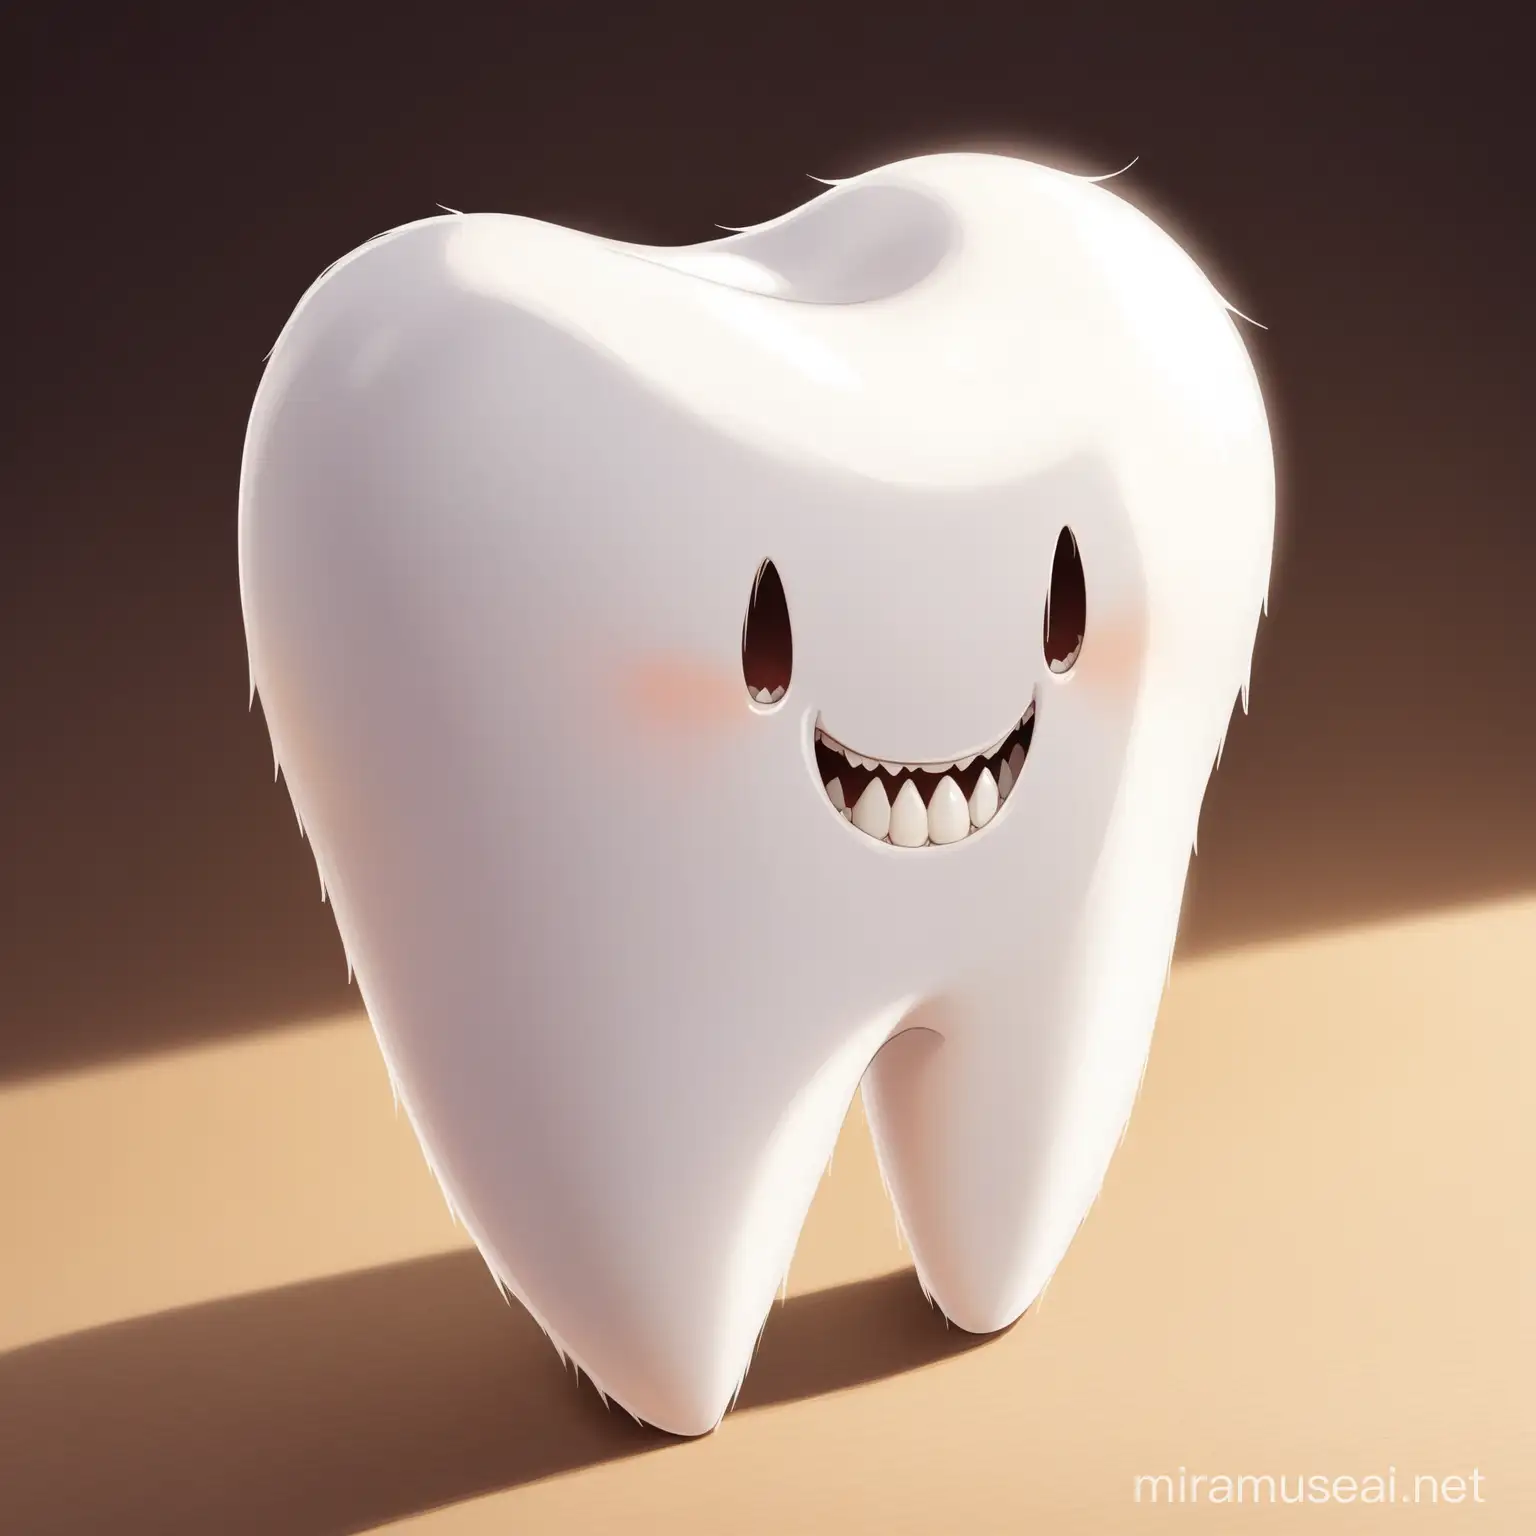 Bright White Tooth on Dark Background